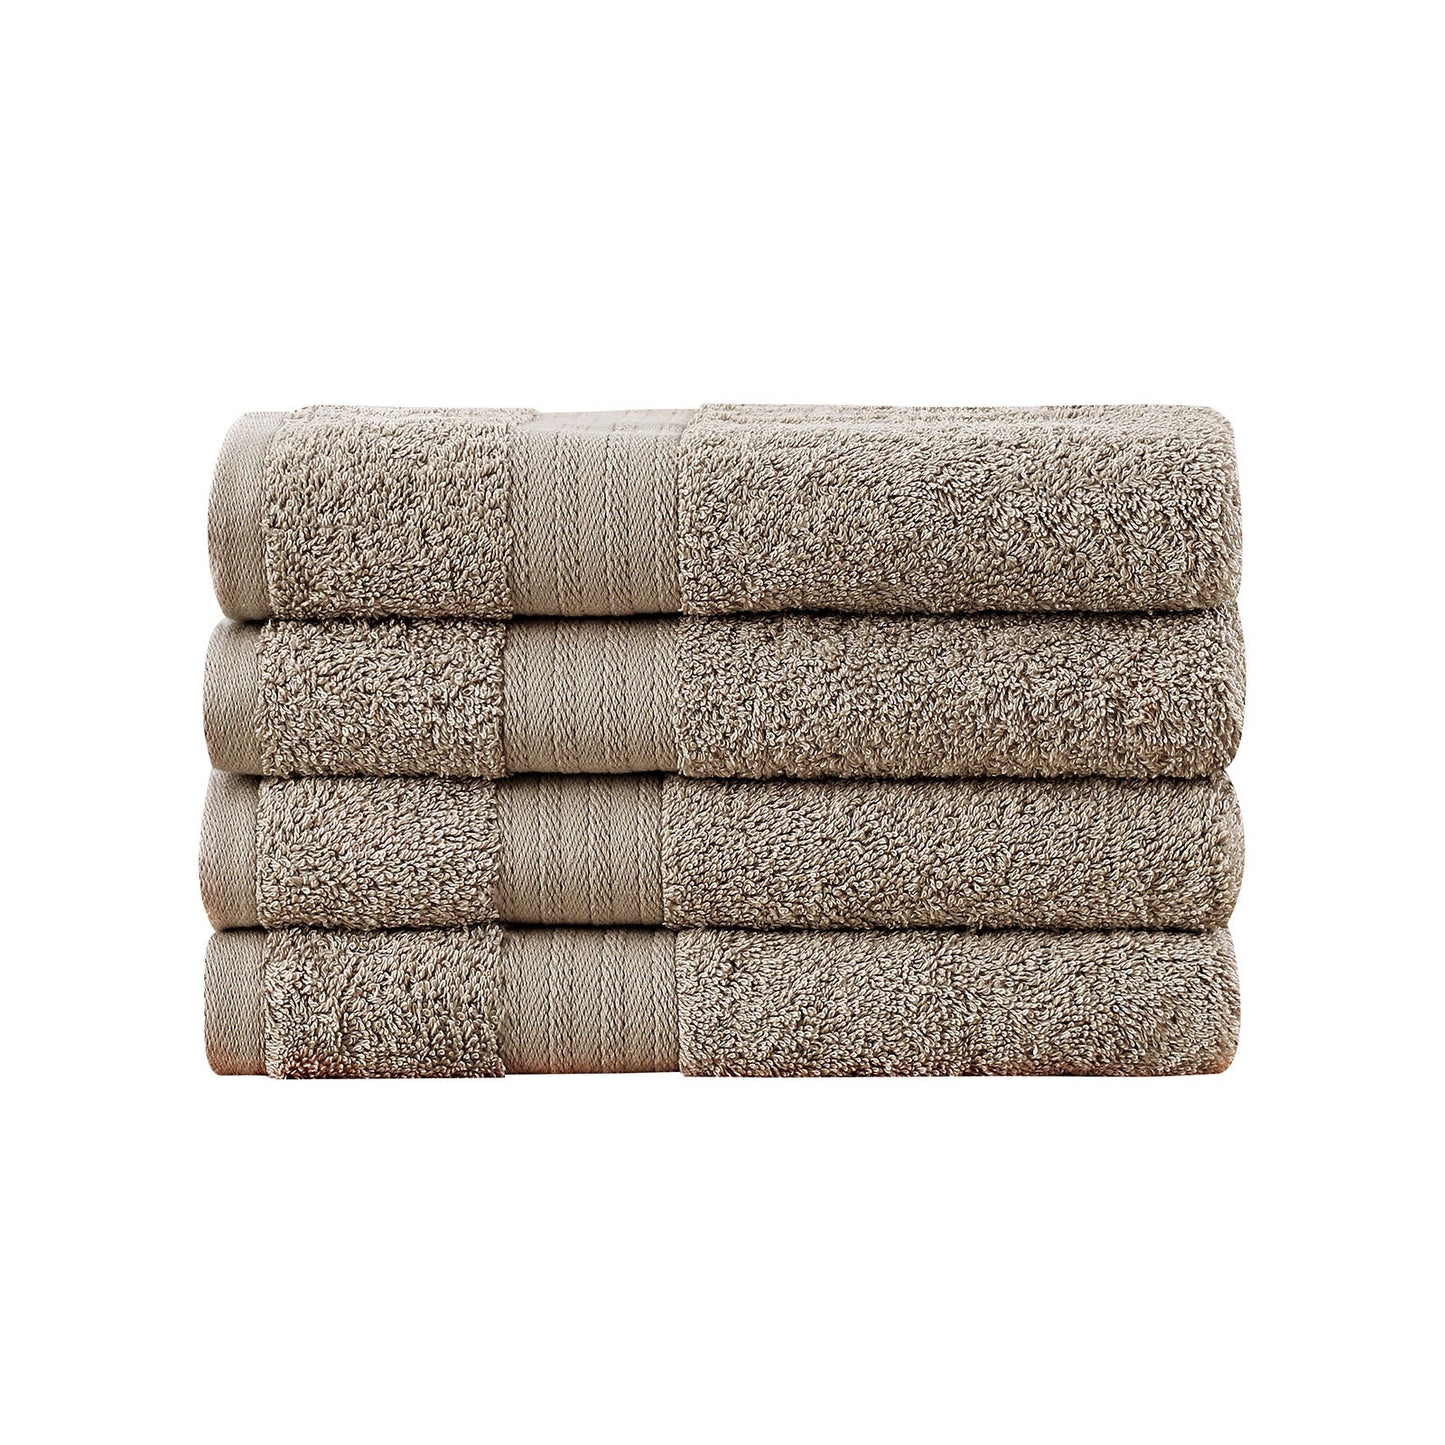 Linenland Bath Towel 4 Piece Cotton Hand Towels Set - Sandstone - BM House & Garden